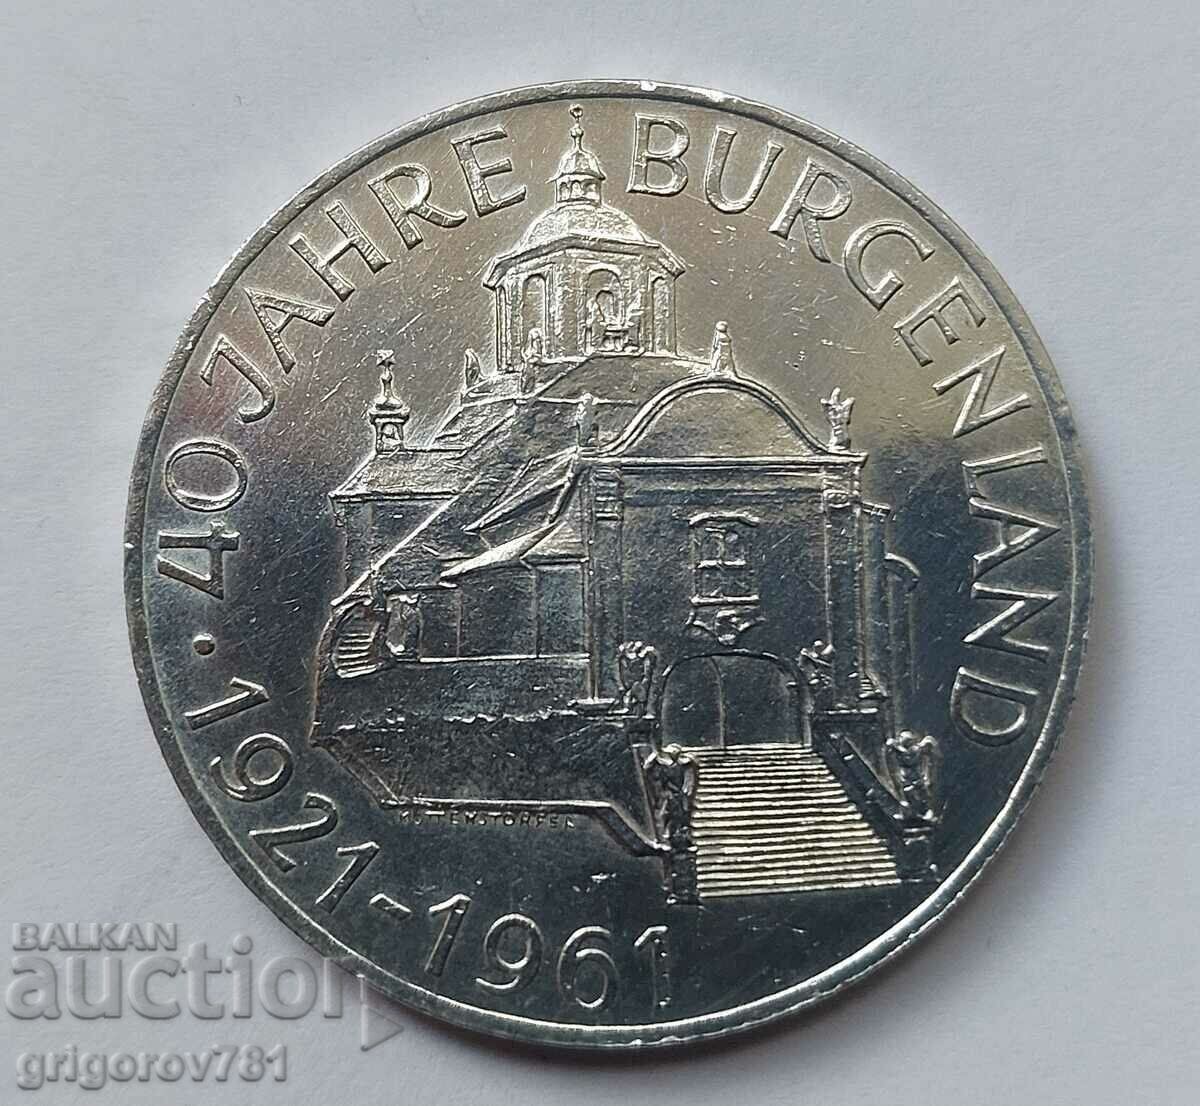 Ασημένιο 25 σελίνια Αυστρία 1961 - Ασημένιο νόμισμα #14